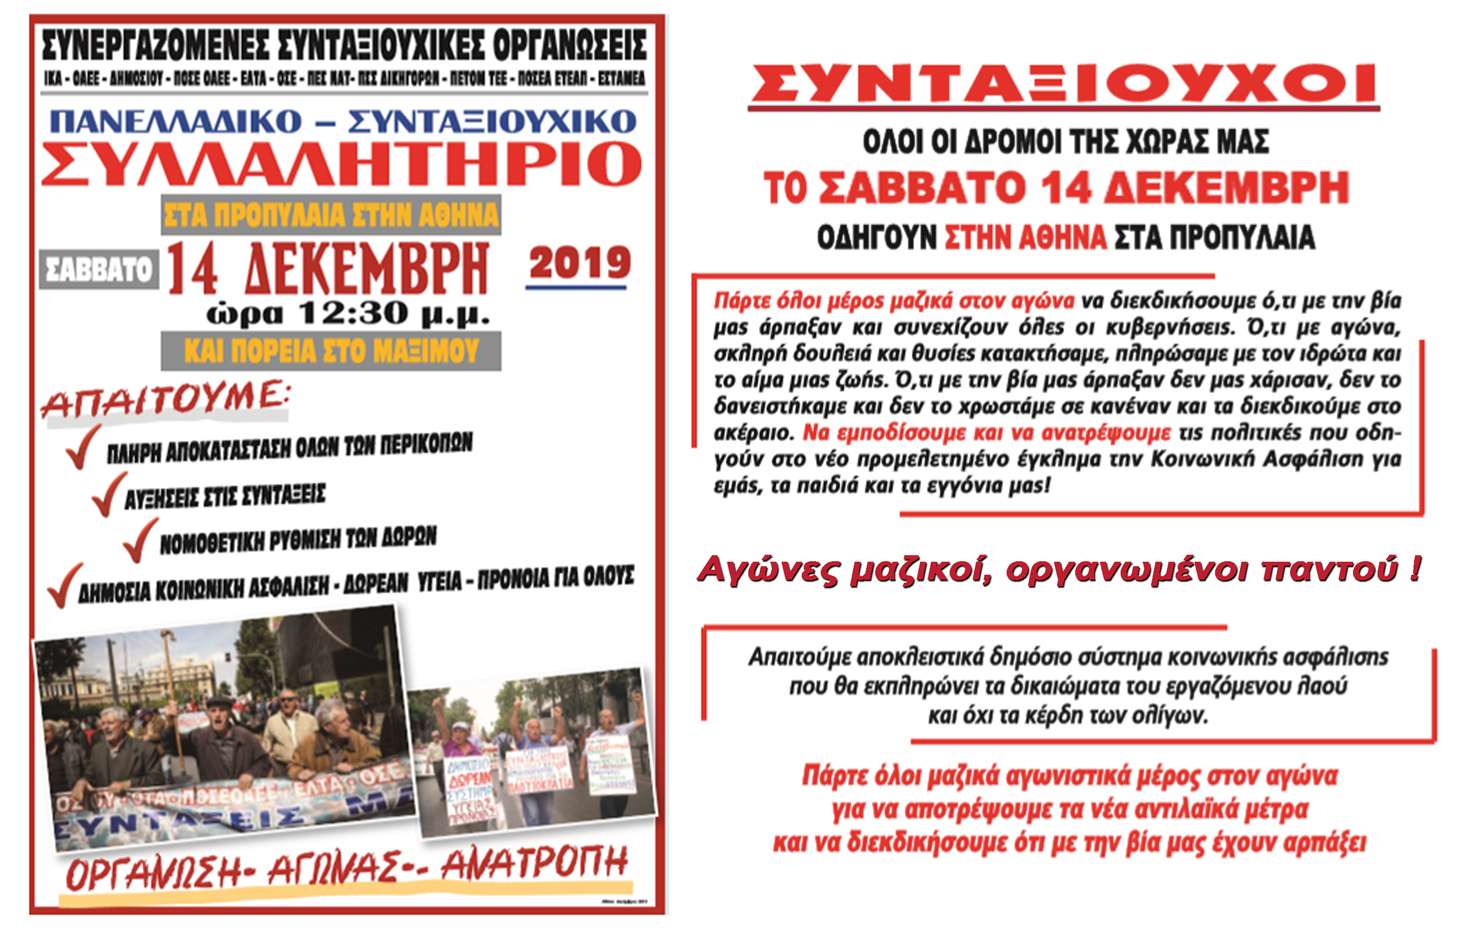 Συνταξιούχοι! Σάββατο 14 Δεκέμβρη 12.30μμ Όλοι οι δρόμοι οδηγούν στην Αθήνα στα Προπύλαια